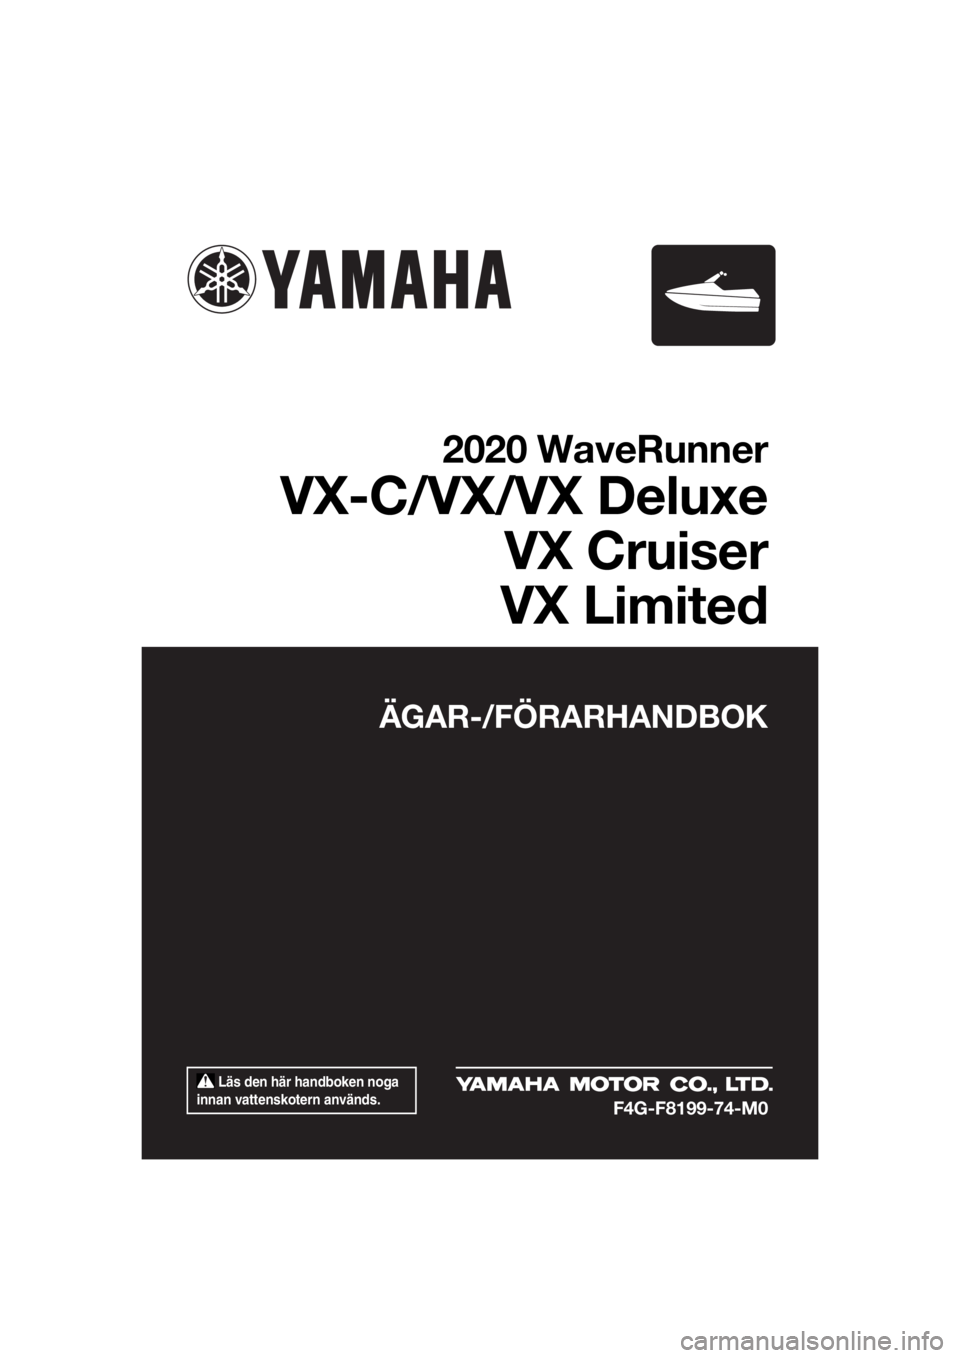 YAMAHA VX LIMITED 2020  Bruksanvisningar (in Swedish)  Läs den här handboken noga 
innan vattenskotern används.
ÄGAR-/FÖRARHANDBOK
2020 WaveRunner
VX-C/VX/VX Deluxe
VX Cruiser
VX Limited
F4G-F8199-74-M0
UF4G74M0.book  Page 1  Monday, July 15, 2019  